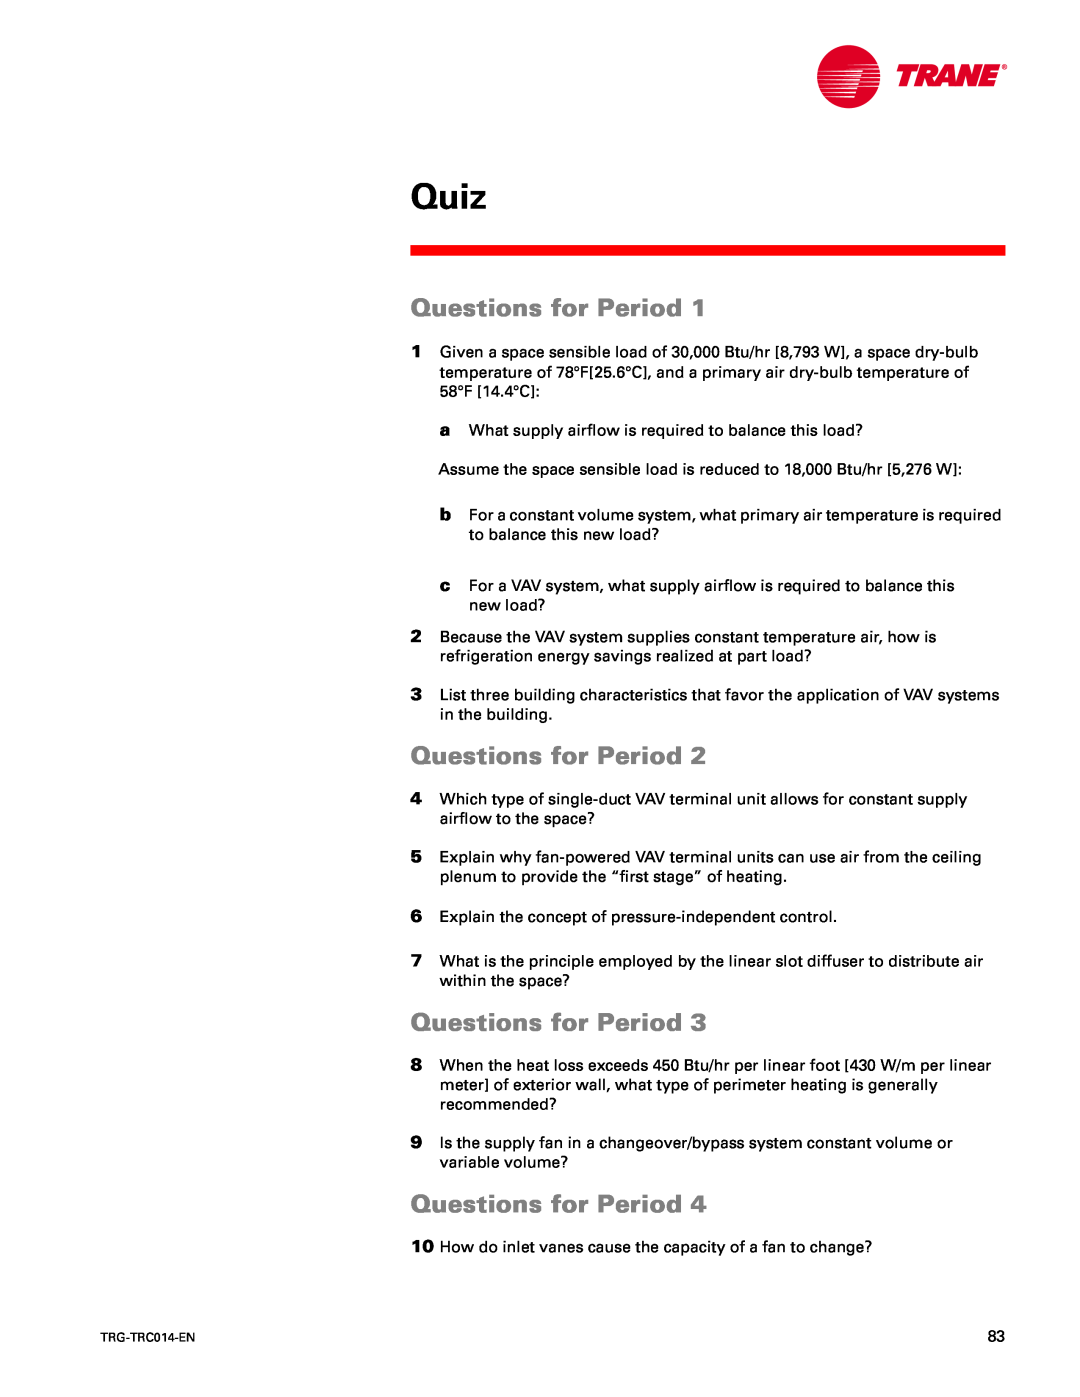 Trane TRG-TRC014-EN manual Quiz, Questions for Period 